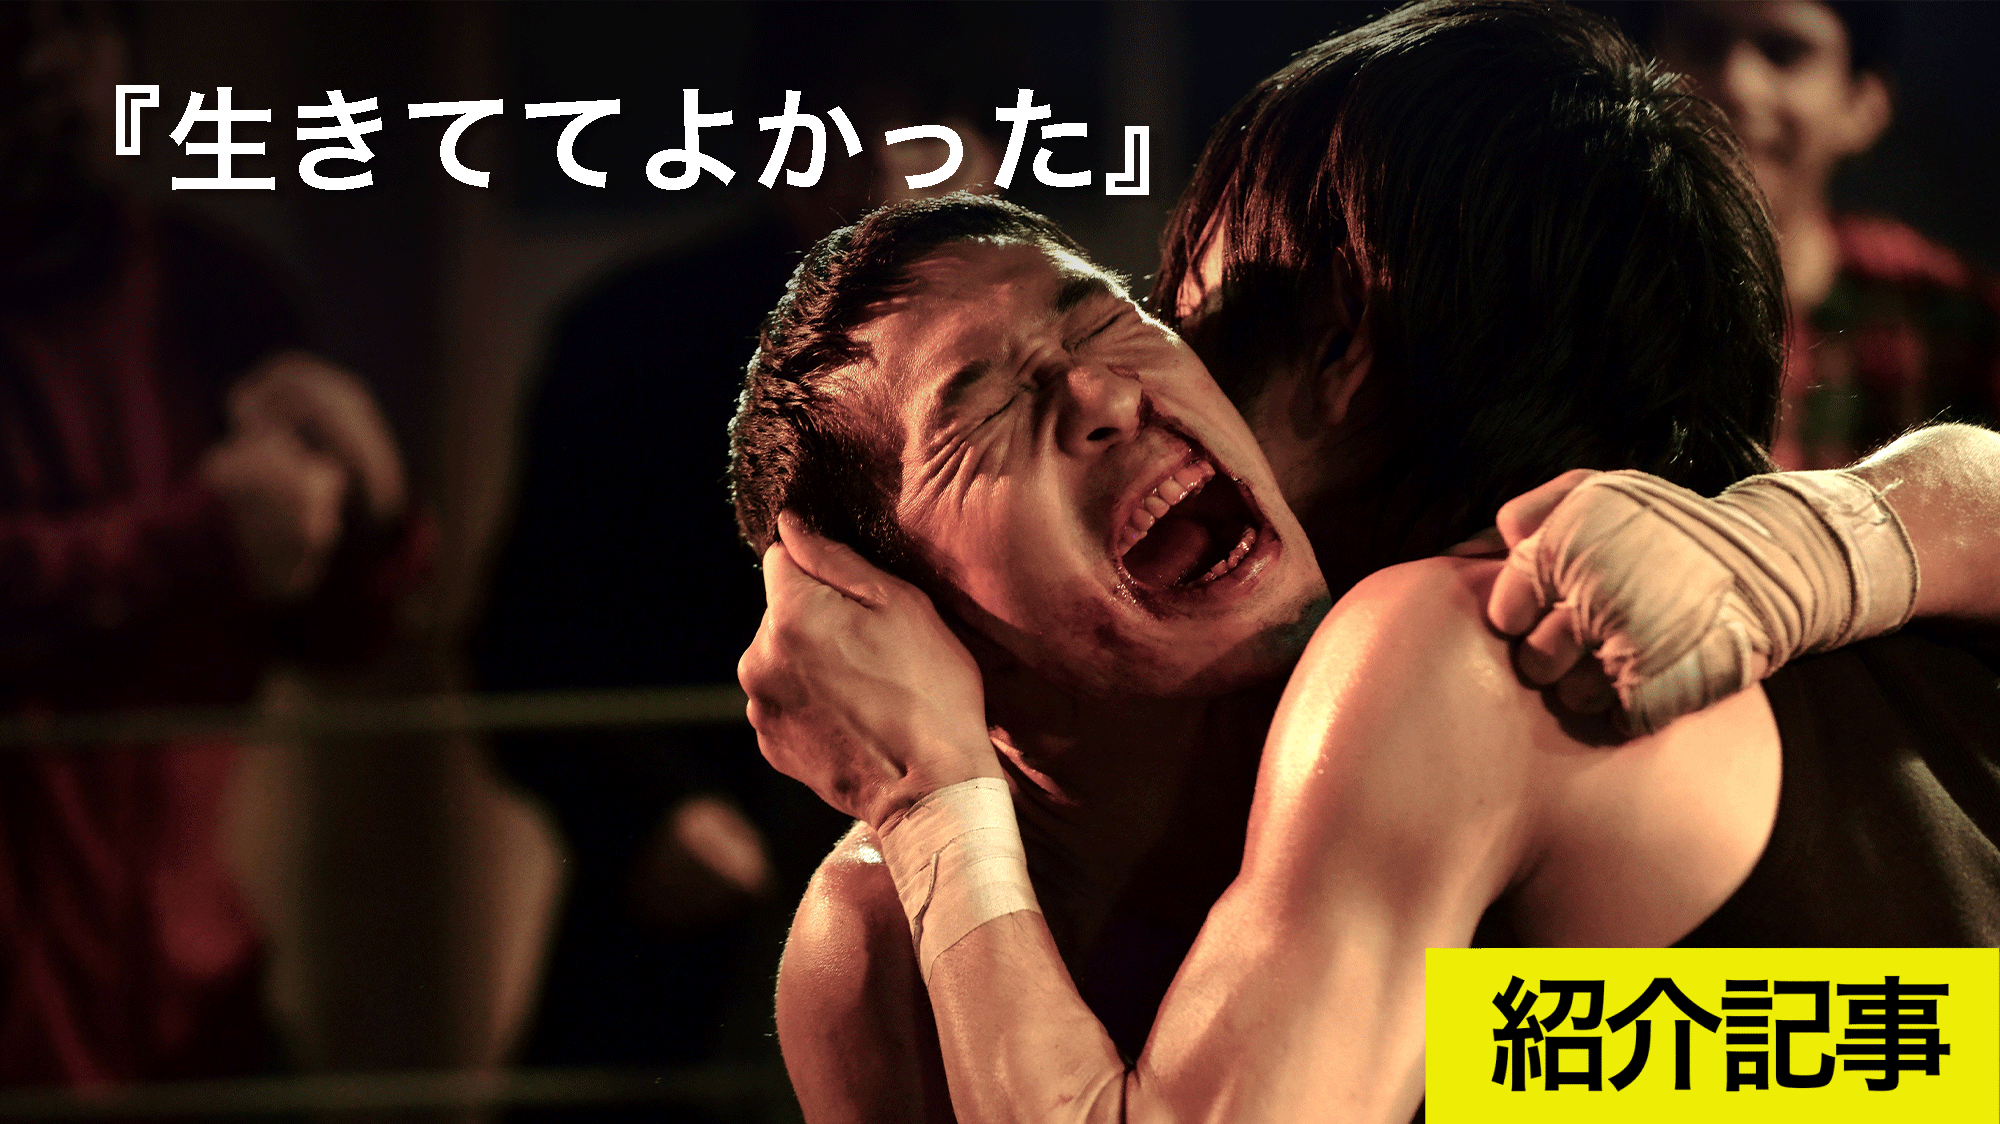 死に物狂いで生き切ったボクサー人生物語 生きててよかった プロボクサーの資格を持つ木幡竜主演で描く日本版 ロッキー Dice